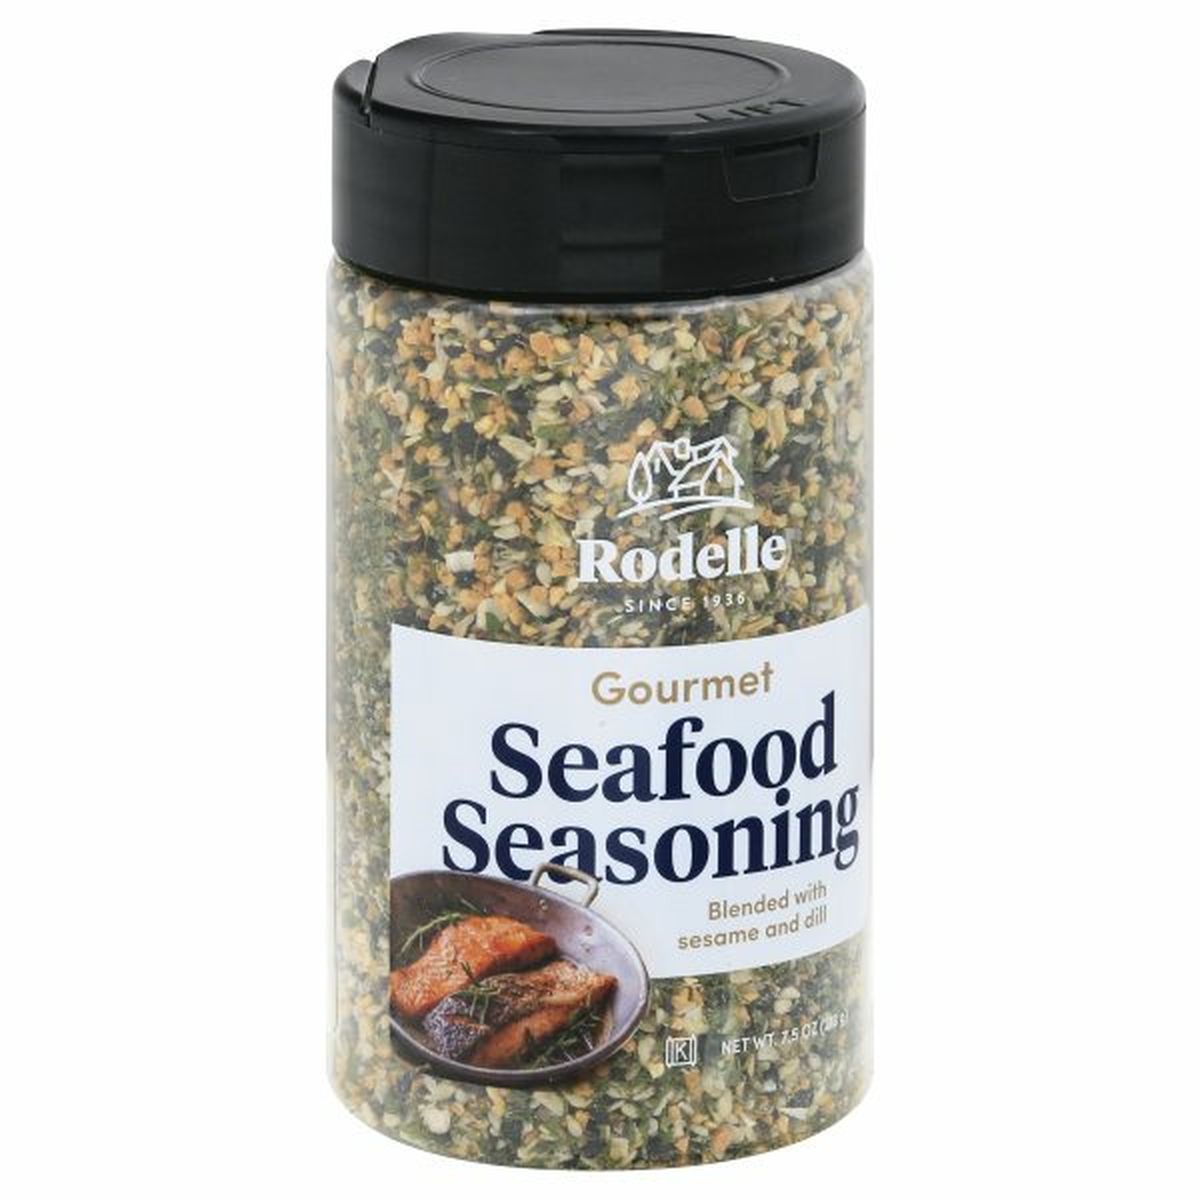 Calories in Rodelle Seasoning, Seafood